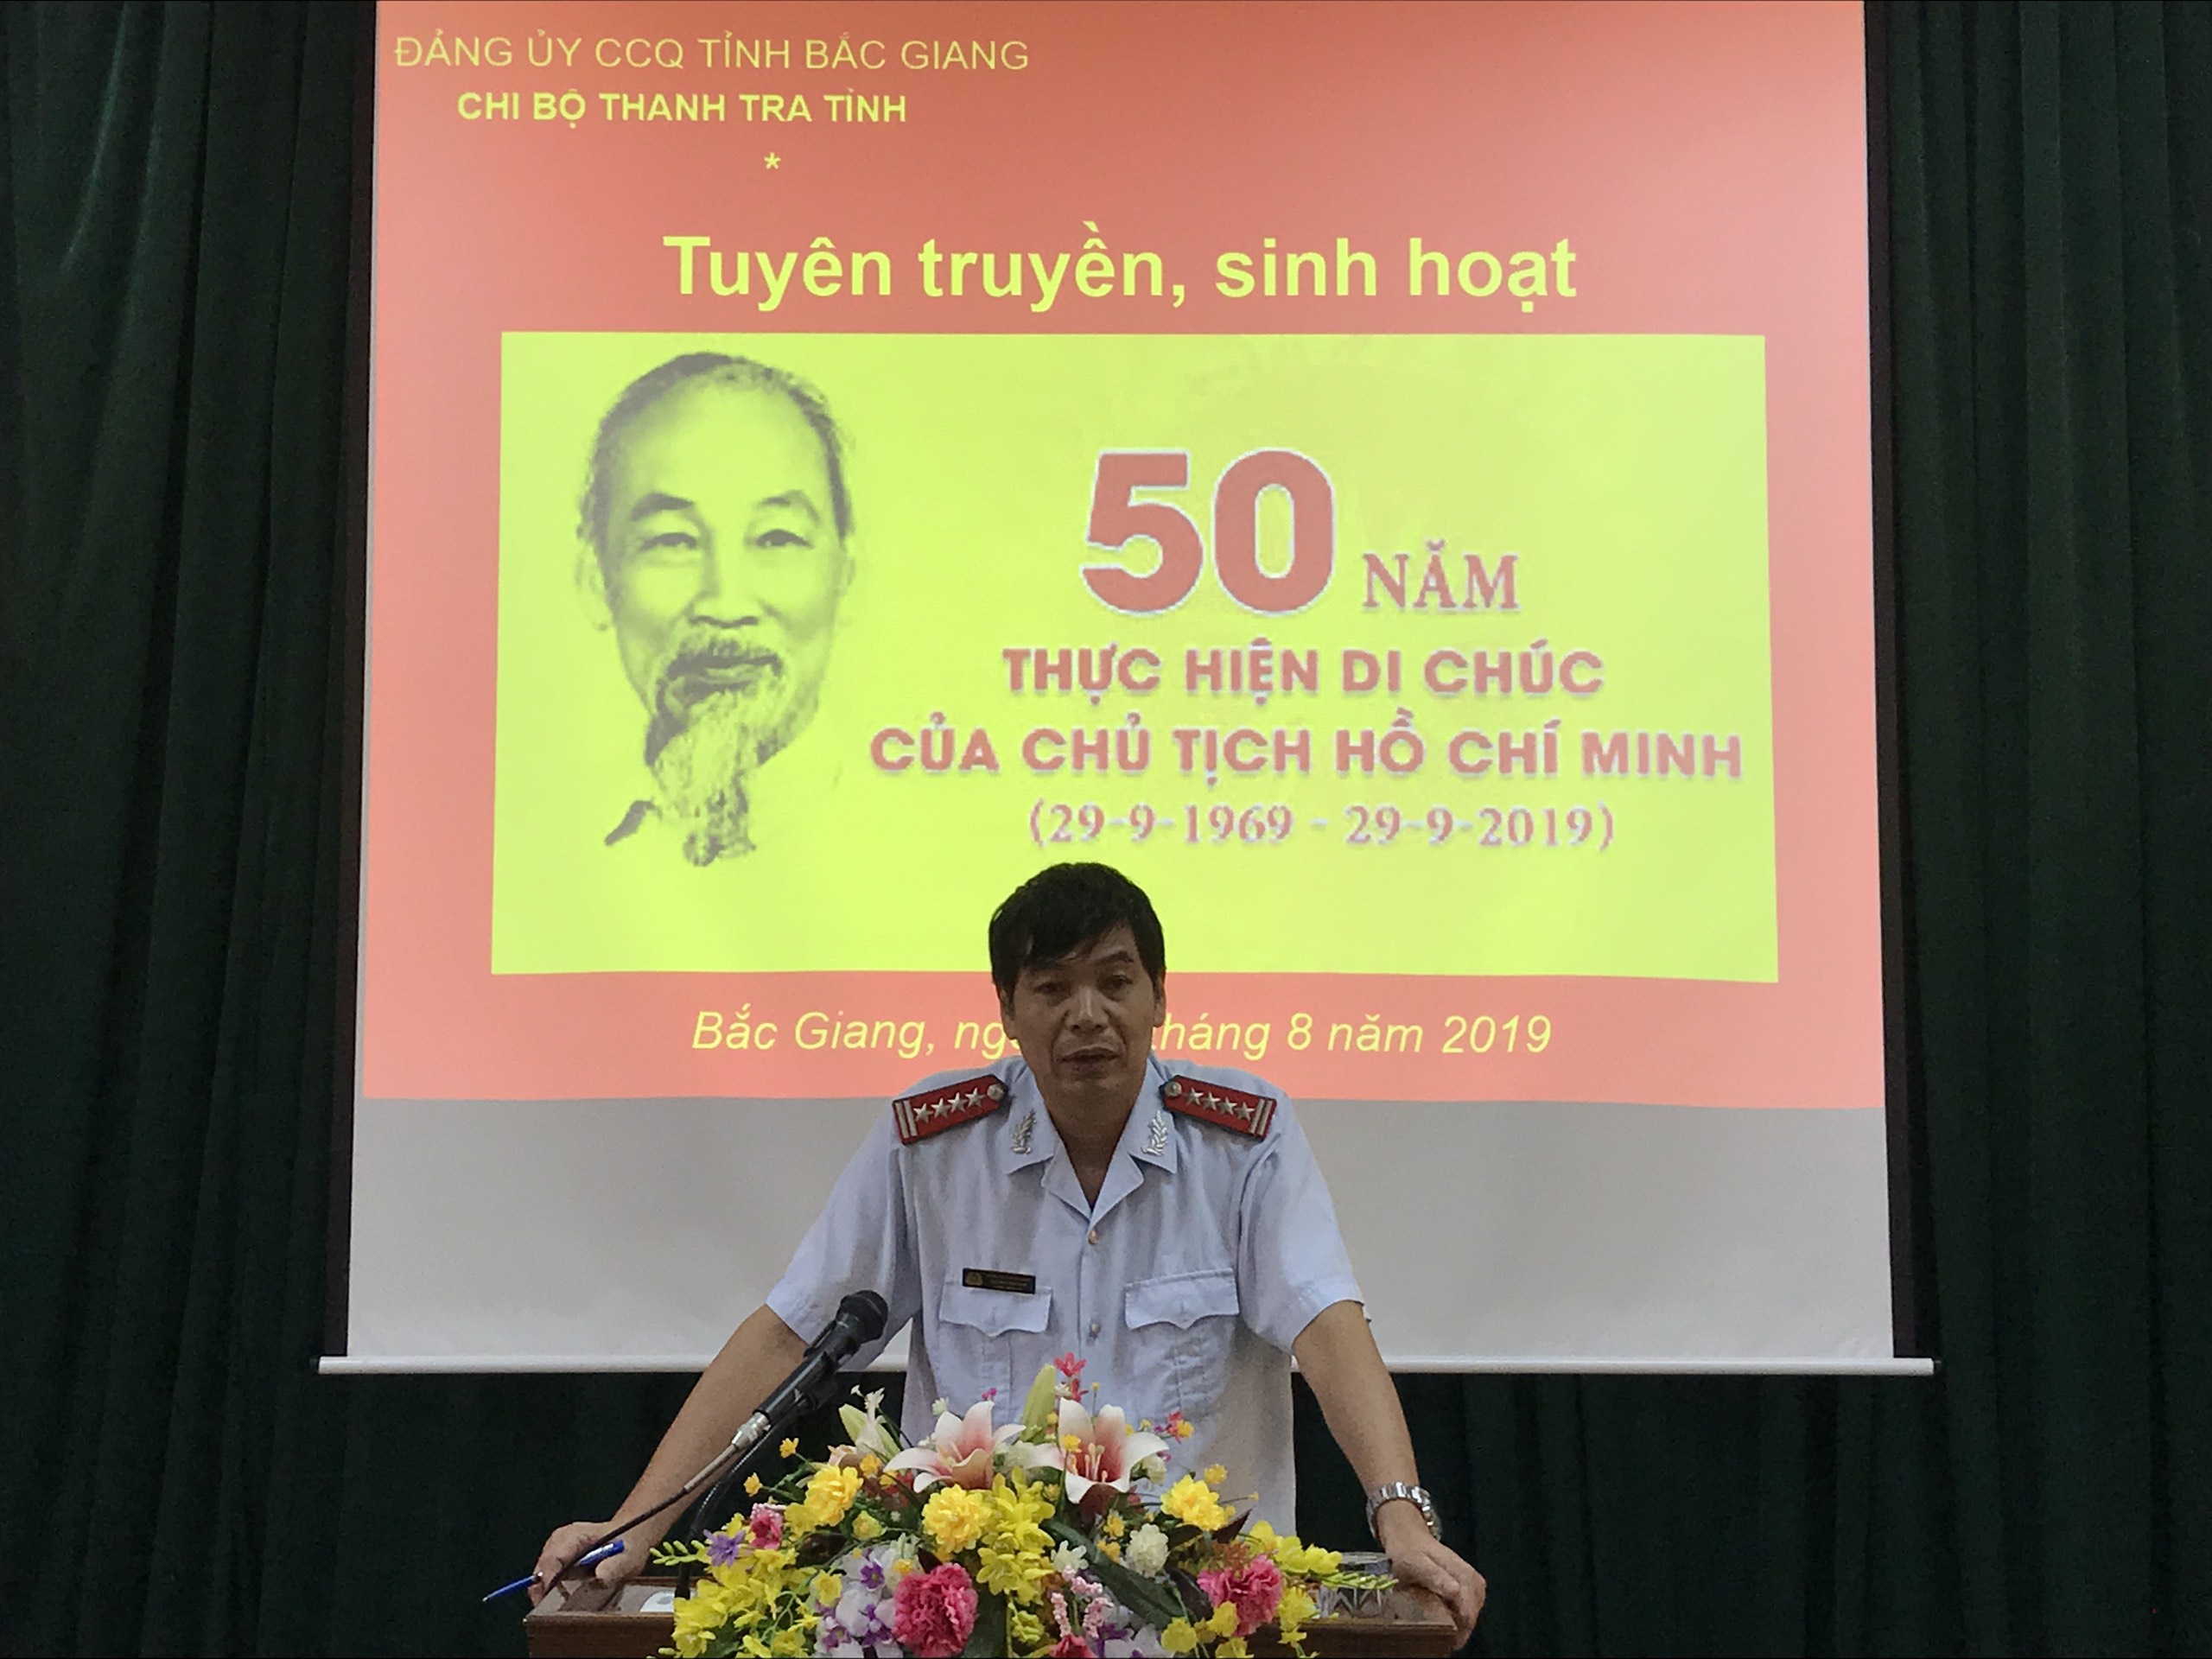 Chi bộ Thanh tra tỉnh tổ chức Hội nghị sinh hoạt chi bộ đặc biệt “50 năm thực hiện Di chúc của...